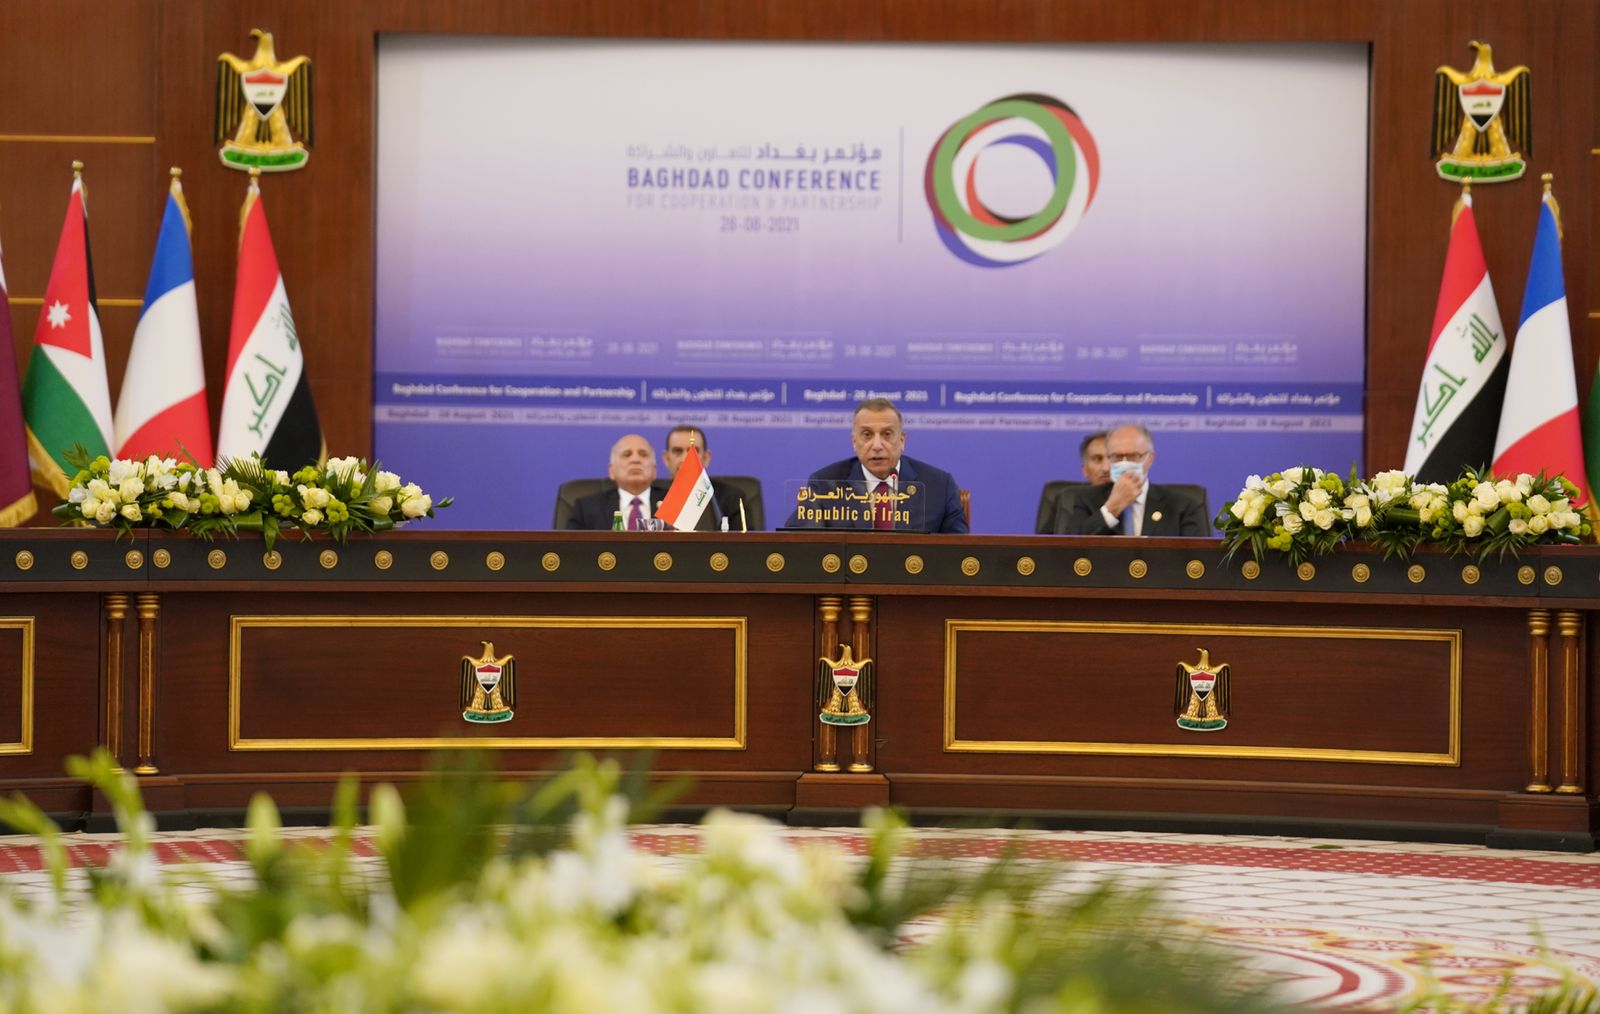 الكاظمي: انعقاد المؤتمر في بغداد يجسد رؤية العراق في تغليب لغة الحوار